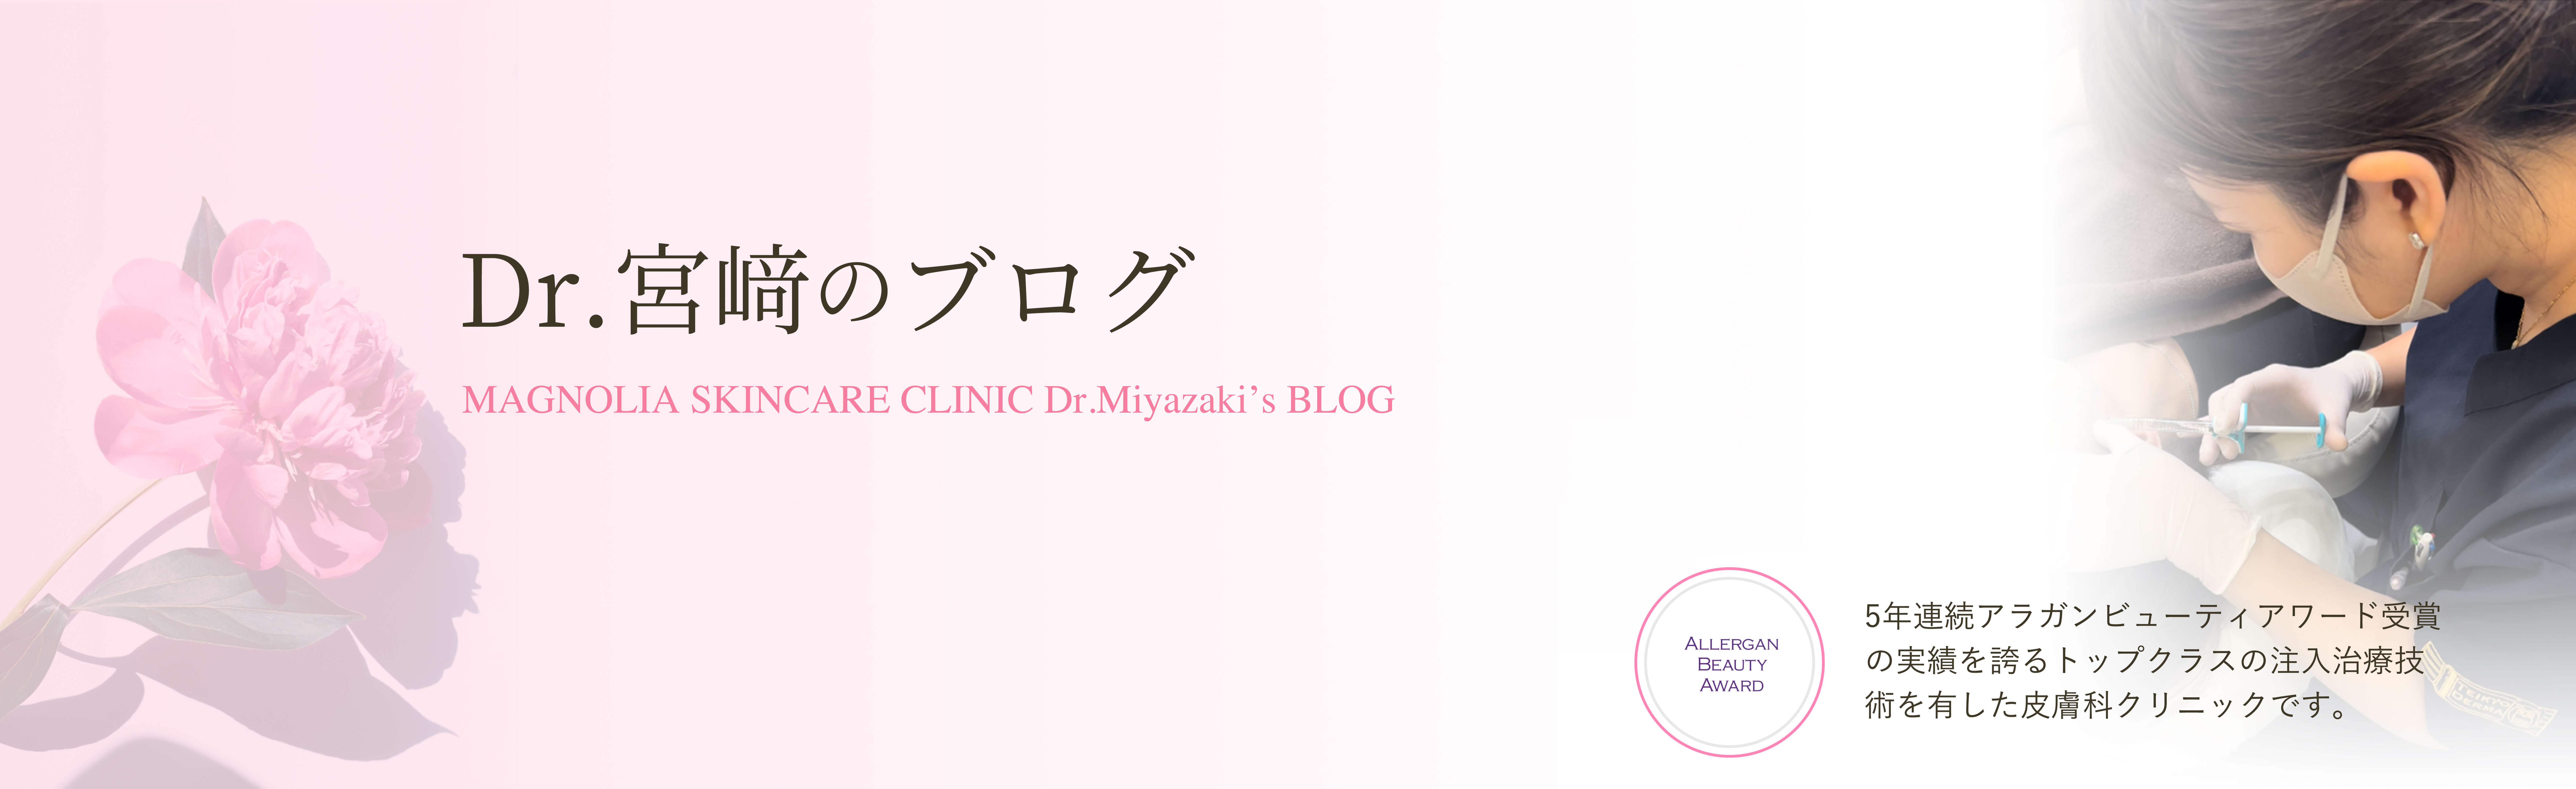 Dr.宮﨑のブログキービジュアル